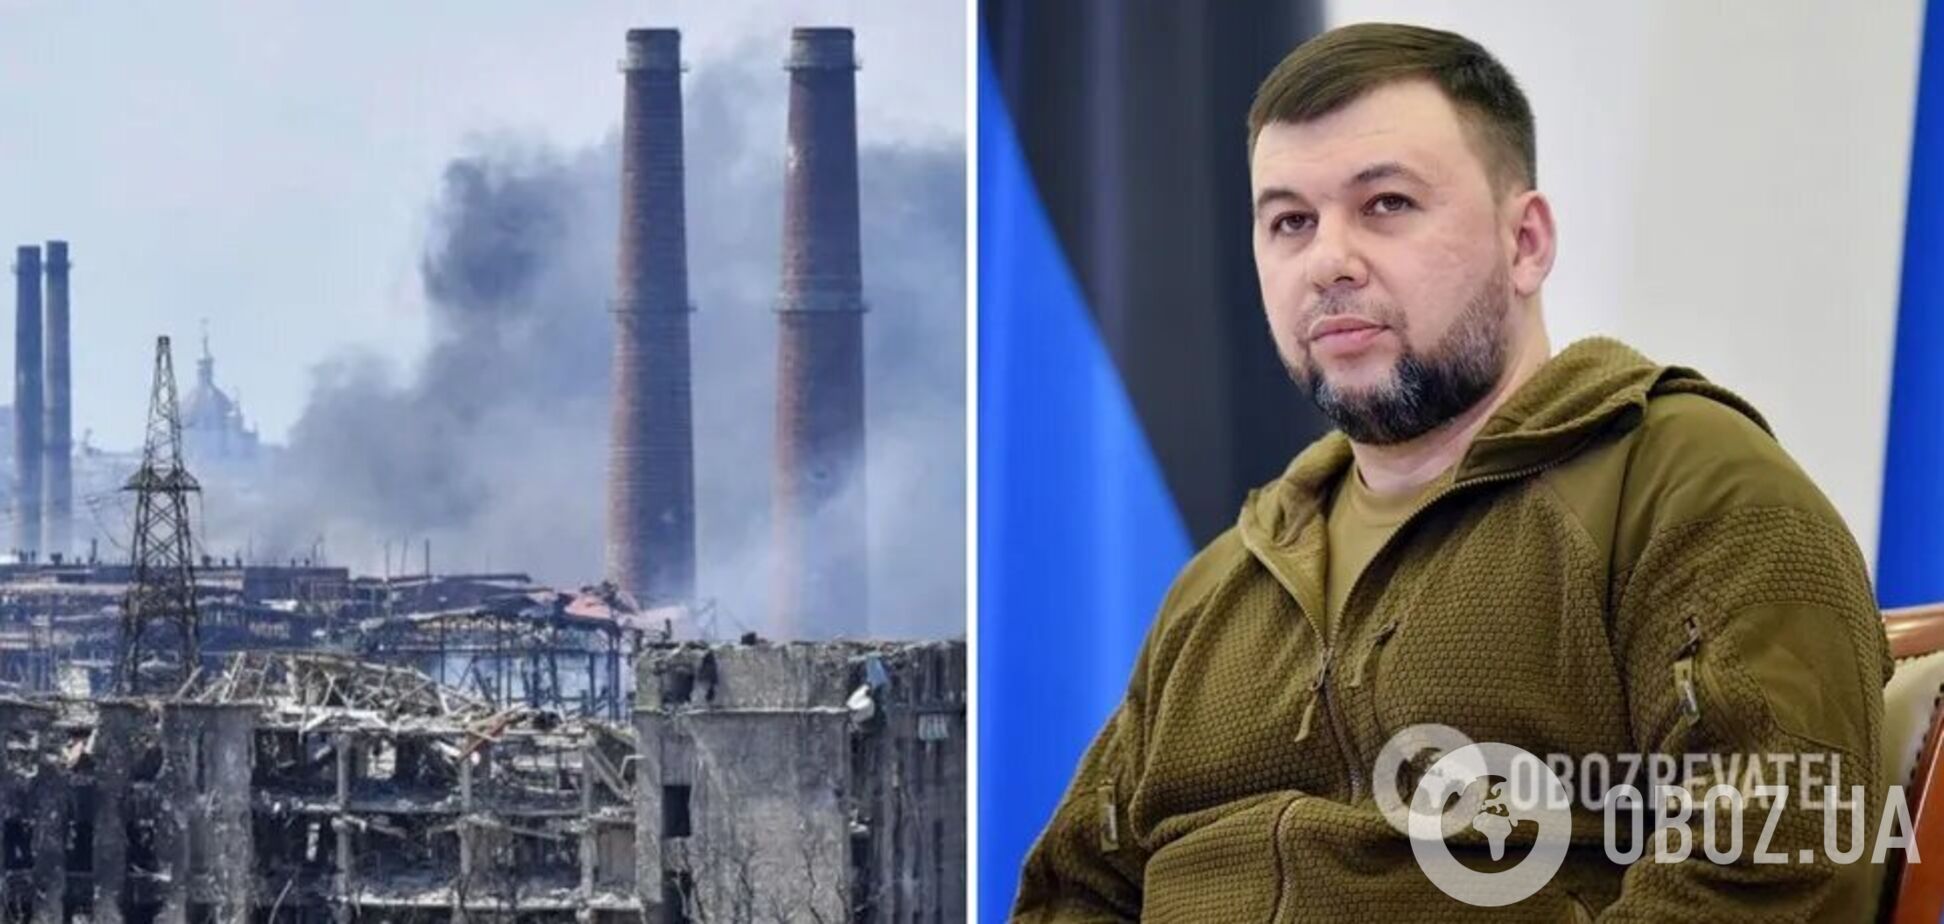 Ватажок бойовиків 'ДНР' розмріявся про знесення 'Азовсталі' та суд над захисниками Маріуполя